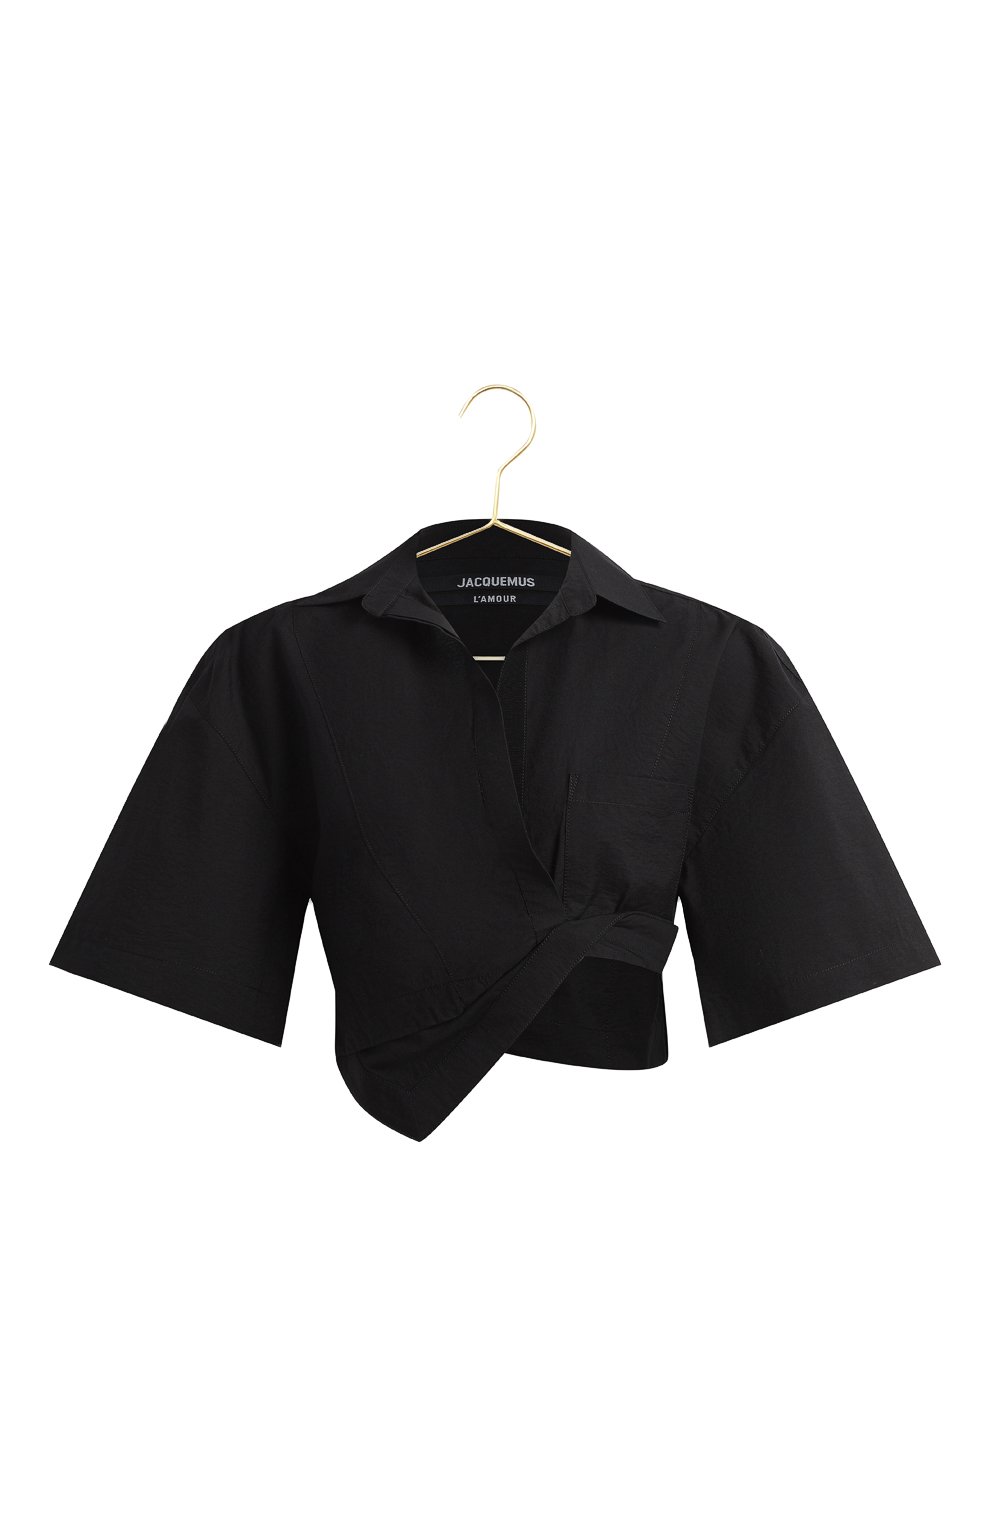 Хлопковая блузка | Jacquemus | Чёрный - 1